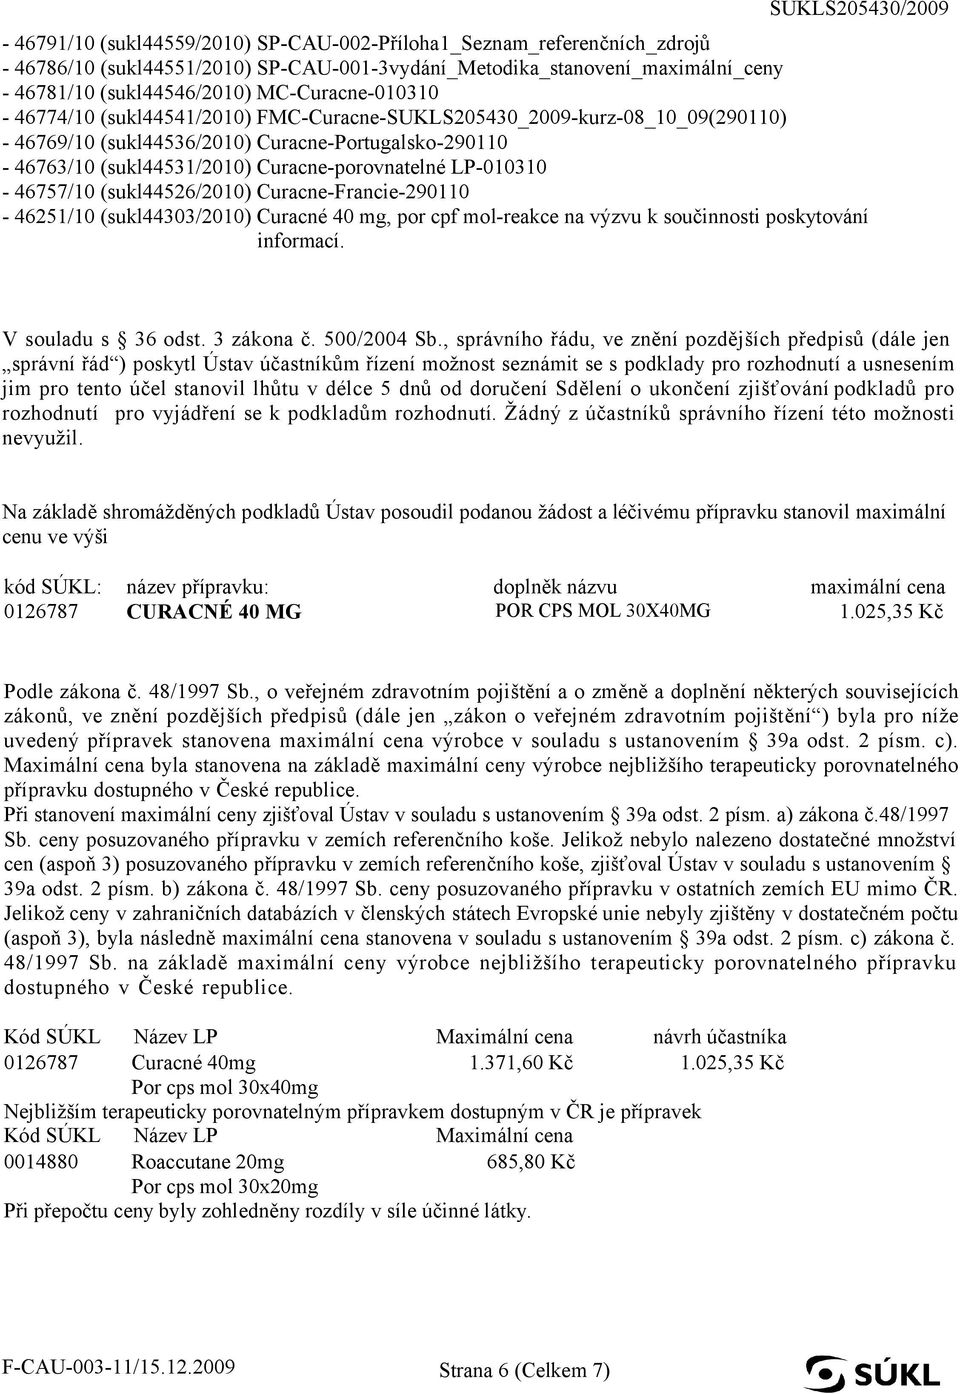 LP-010310-46757/10 (sukl44526/2010) Curacne-Francie-290110-46251/10 (sukl44303/2010) Curacné 40 mg, por cpf mol-reakce na výzvu k součinnosti poskytování informací. V souladu s 36 odst. 3 zákona č.